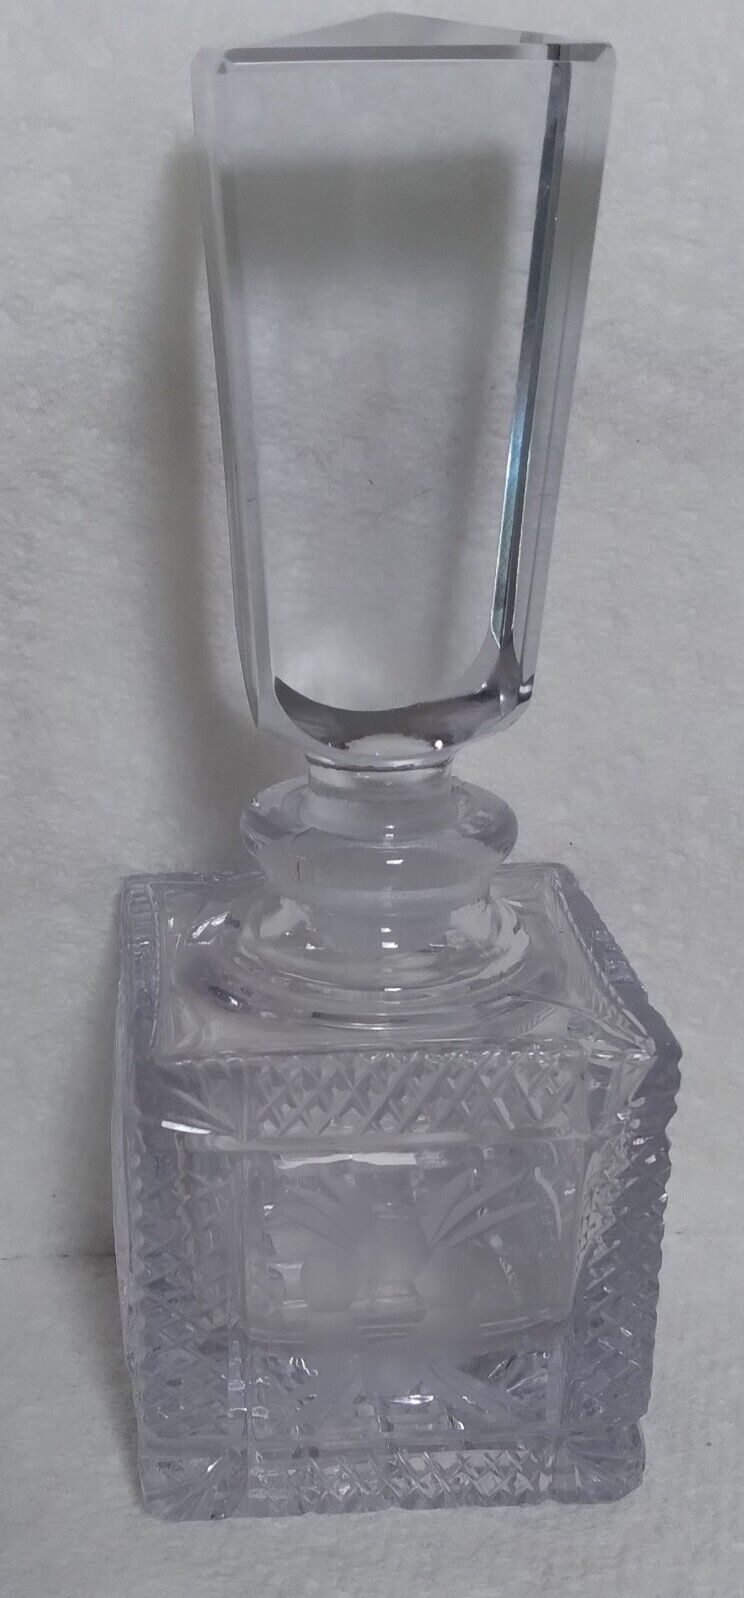 Antique Pressed Glass Perfume Bottle Lavender Tint (Please read description)